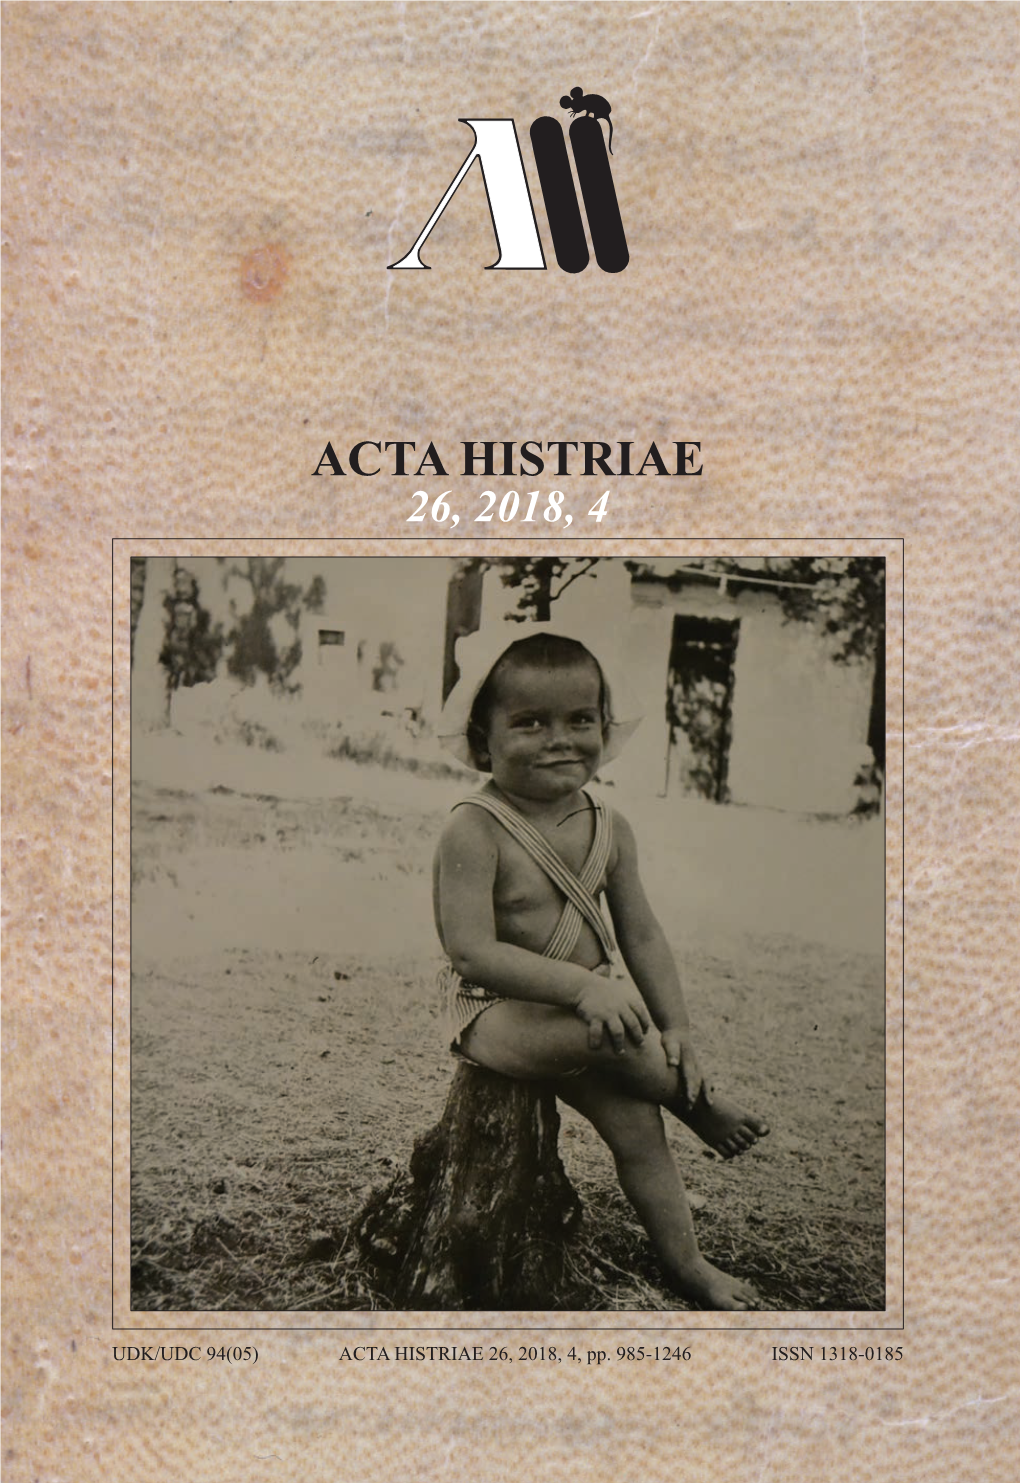 ACTA HISTRIAE 26, 2018, 4, Pp